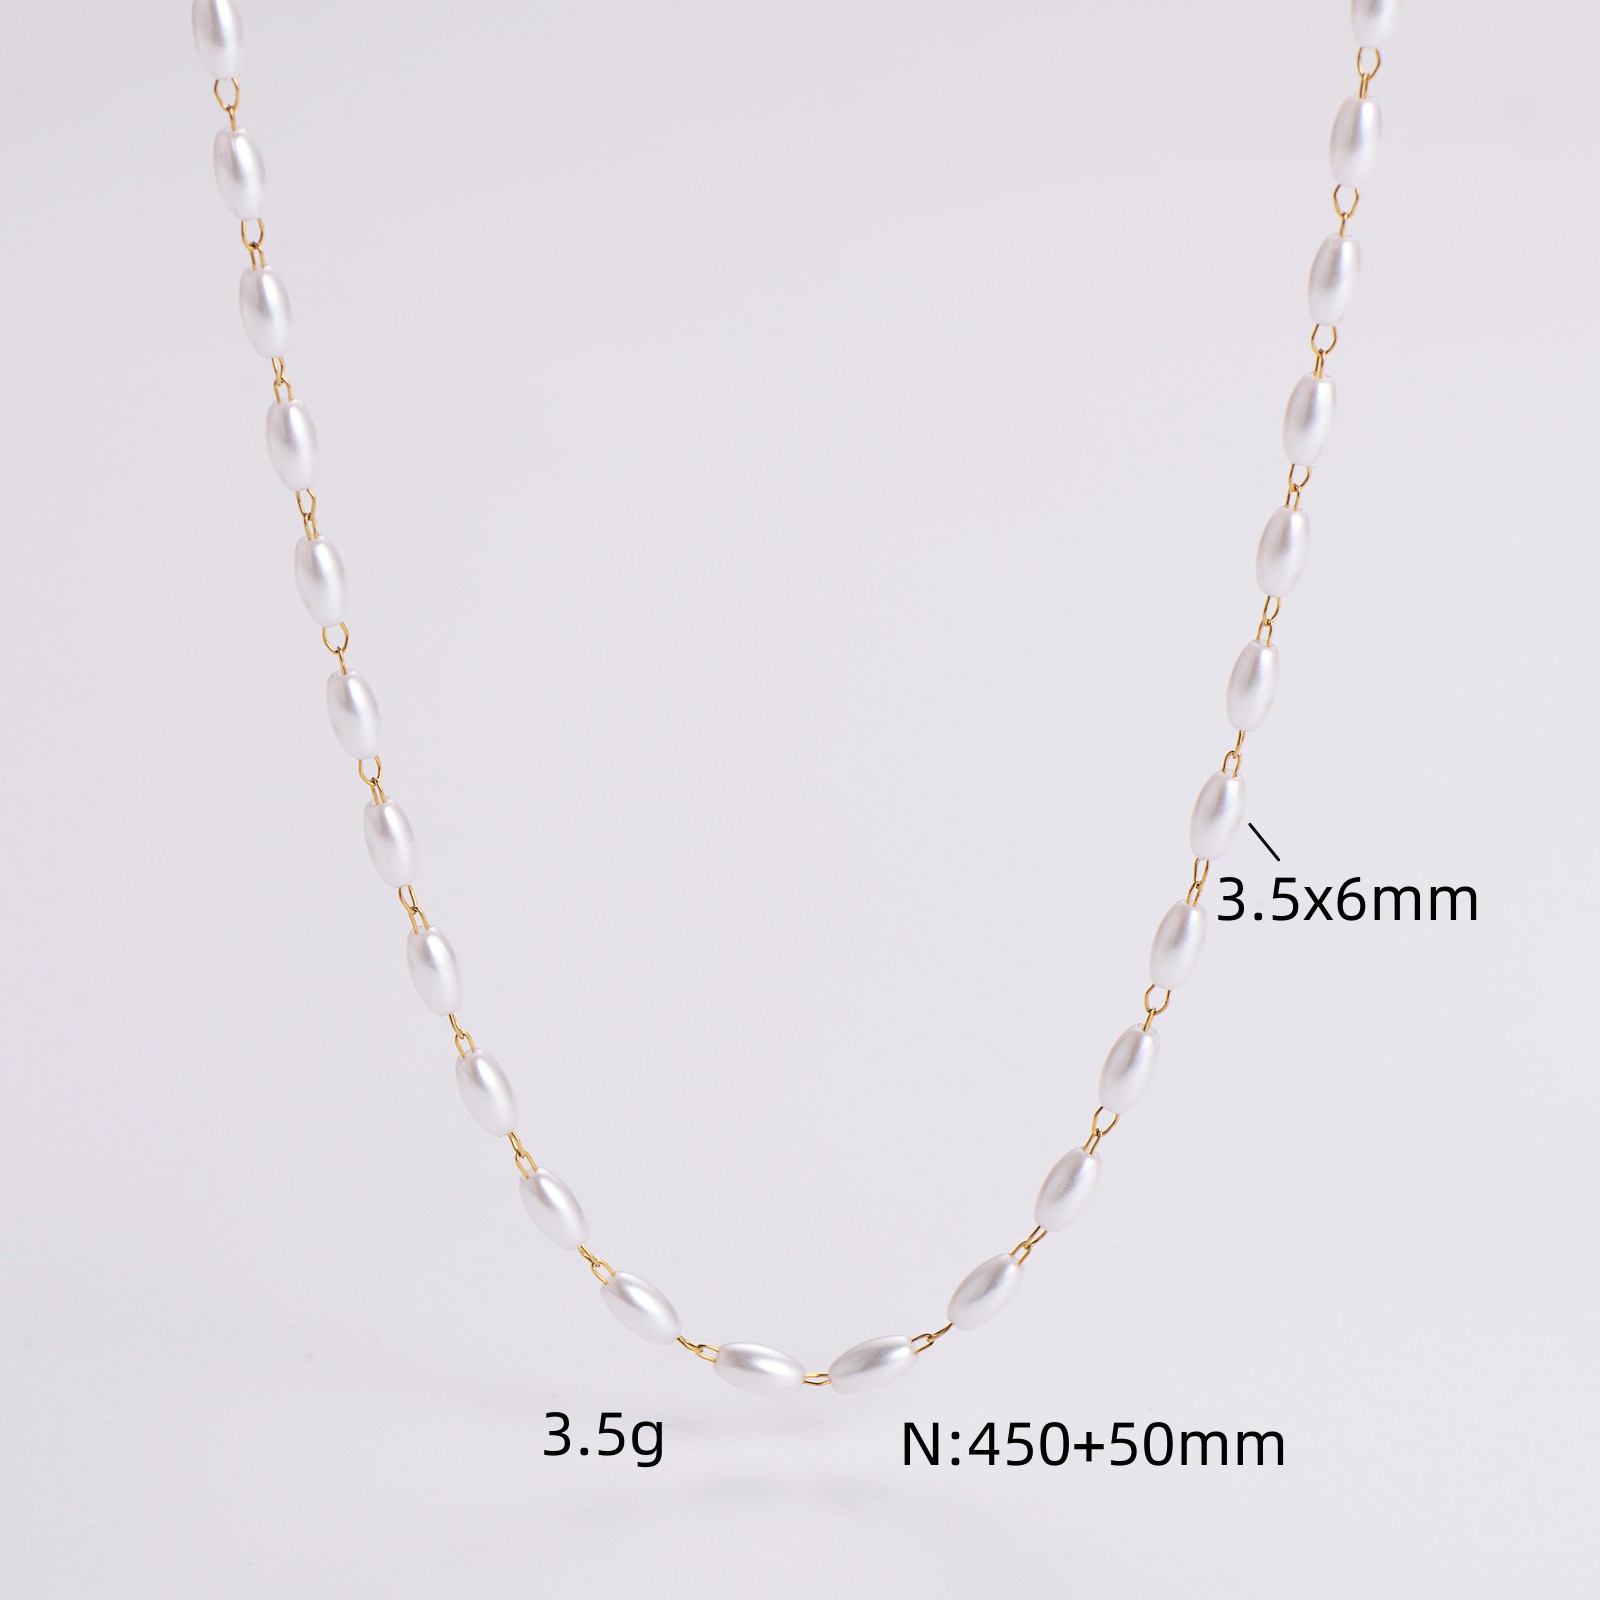 4:3.5x6mm necklace 45cm 5cm